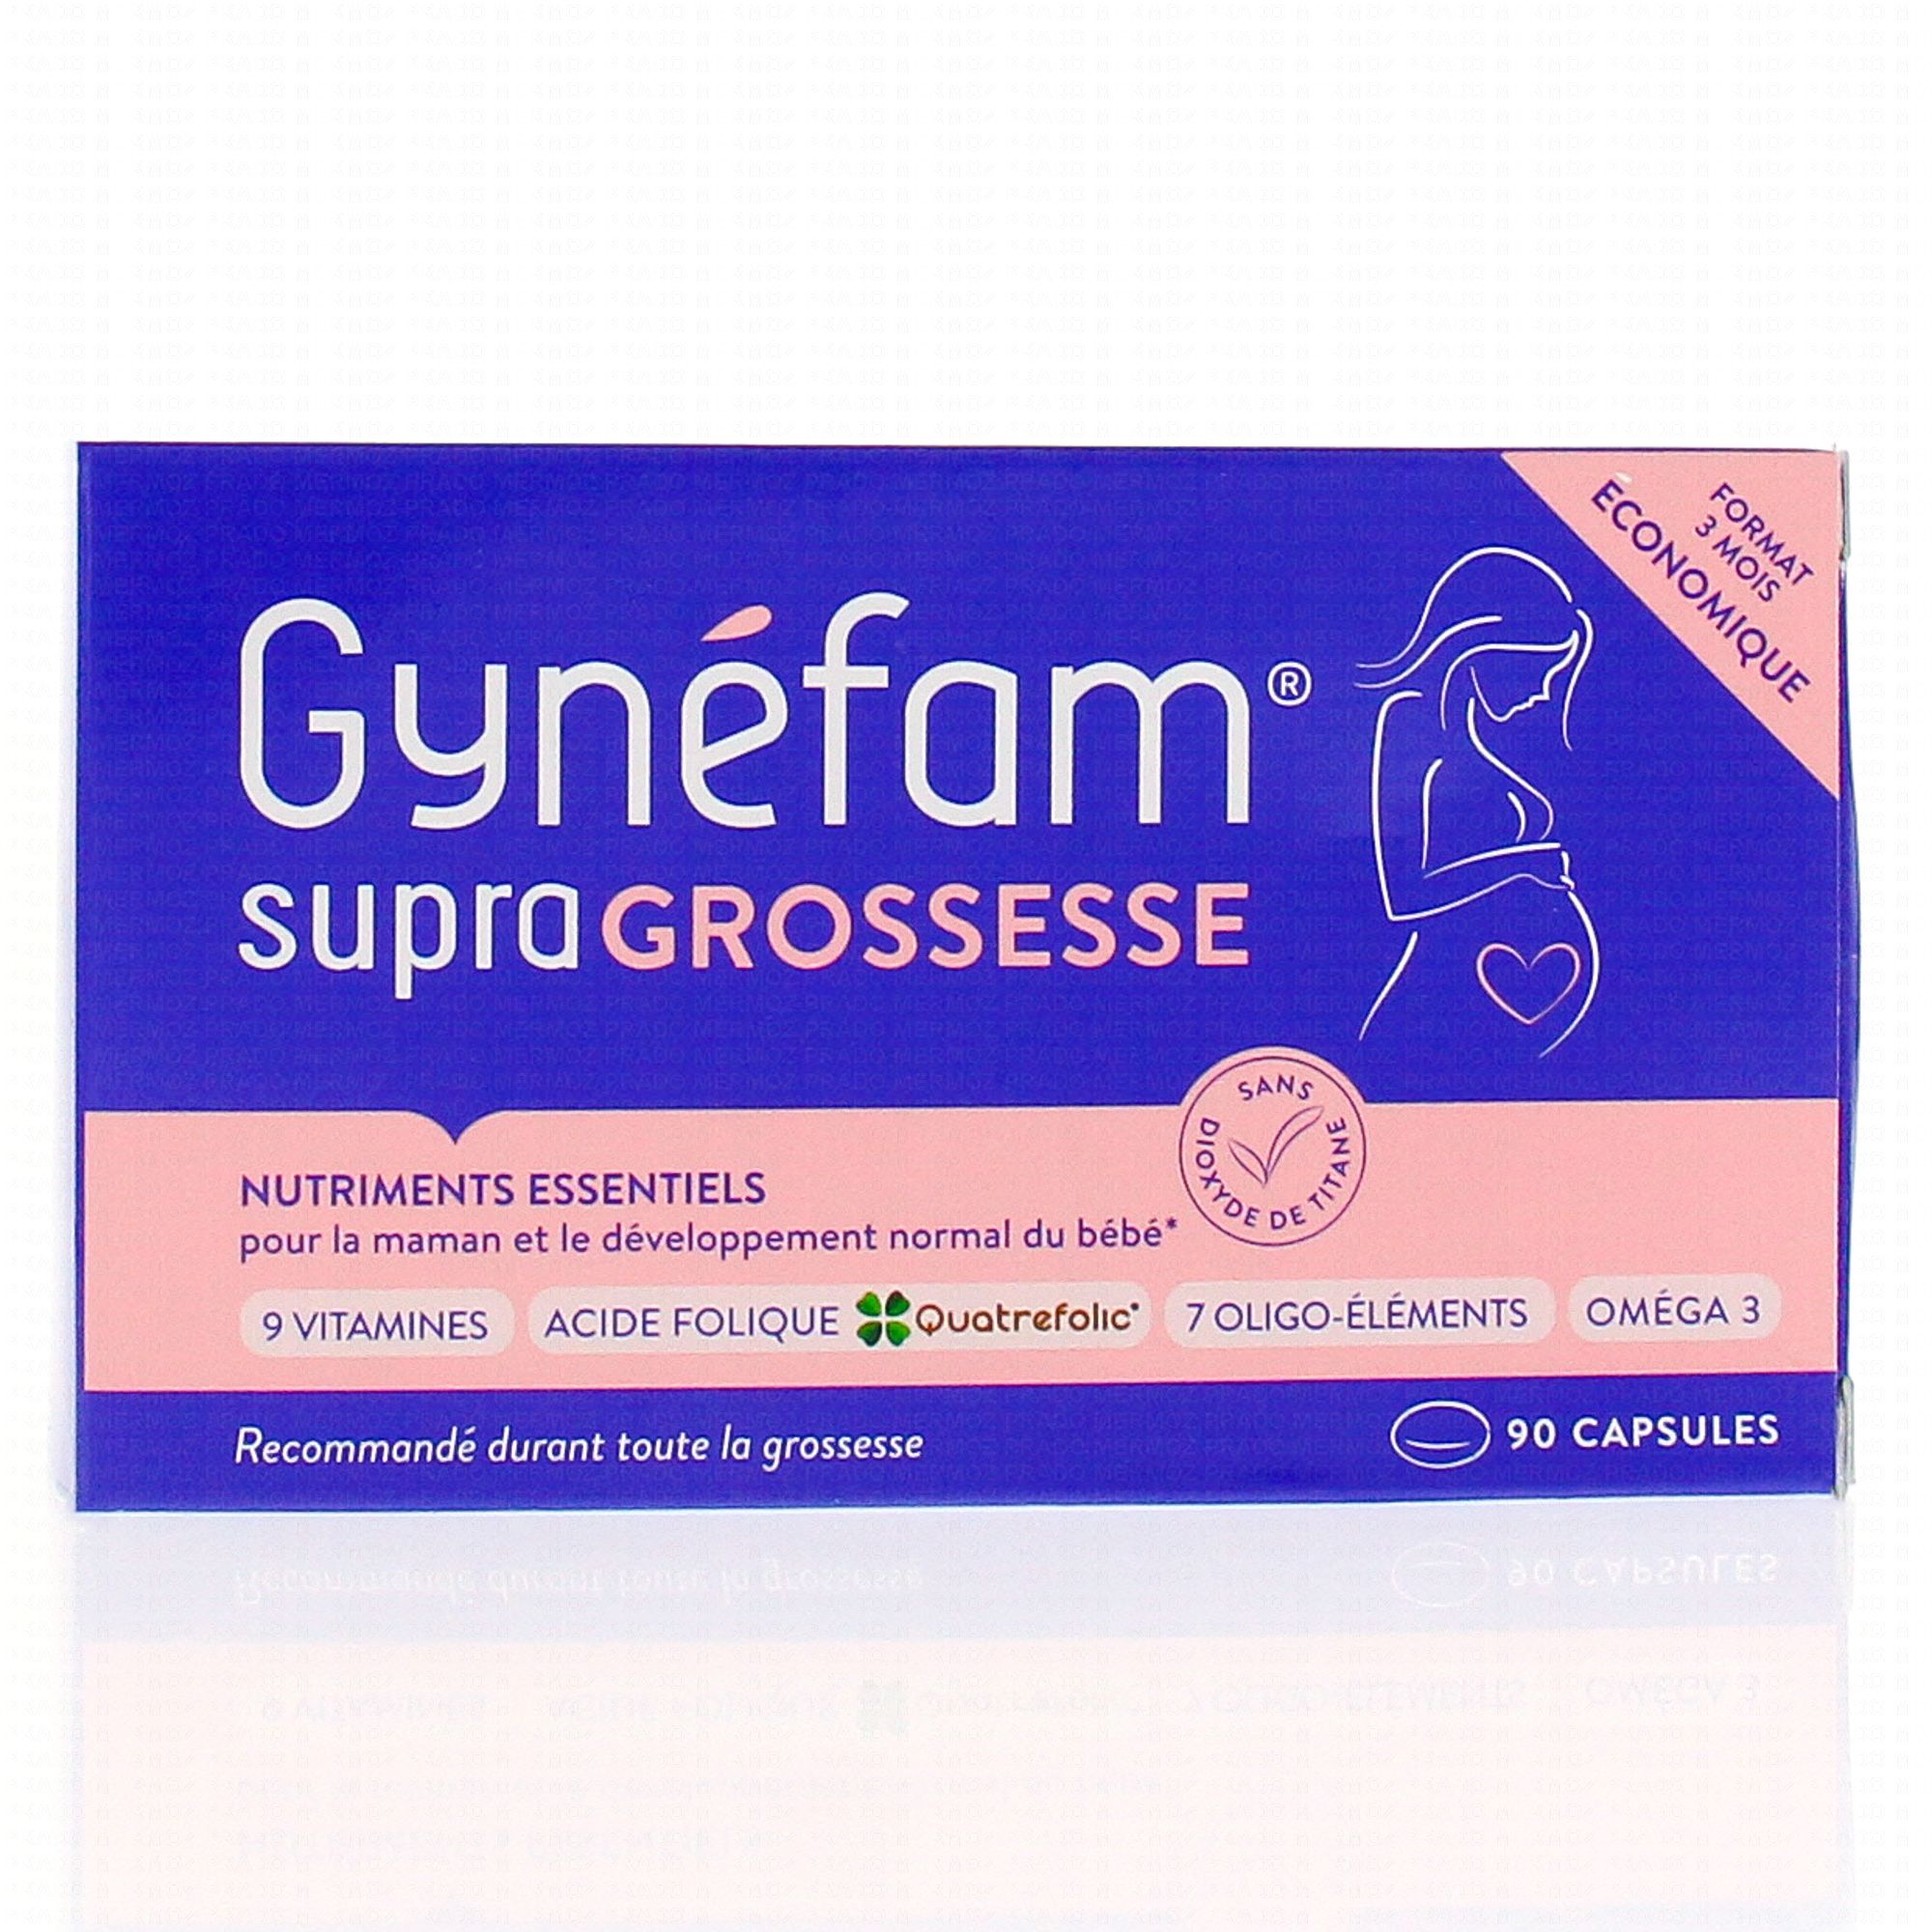 Gynefam Supra Grossesse • 90 capsules